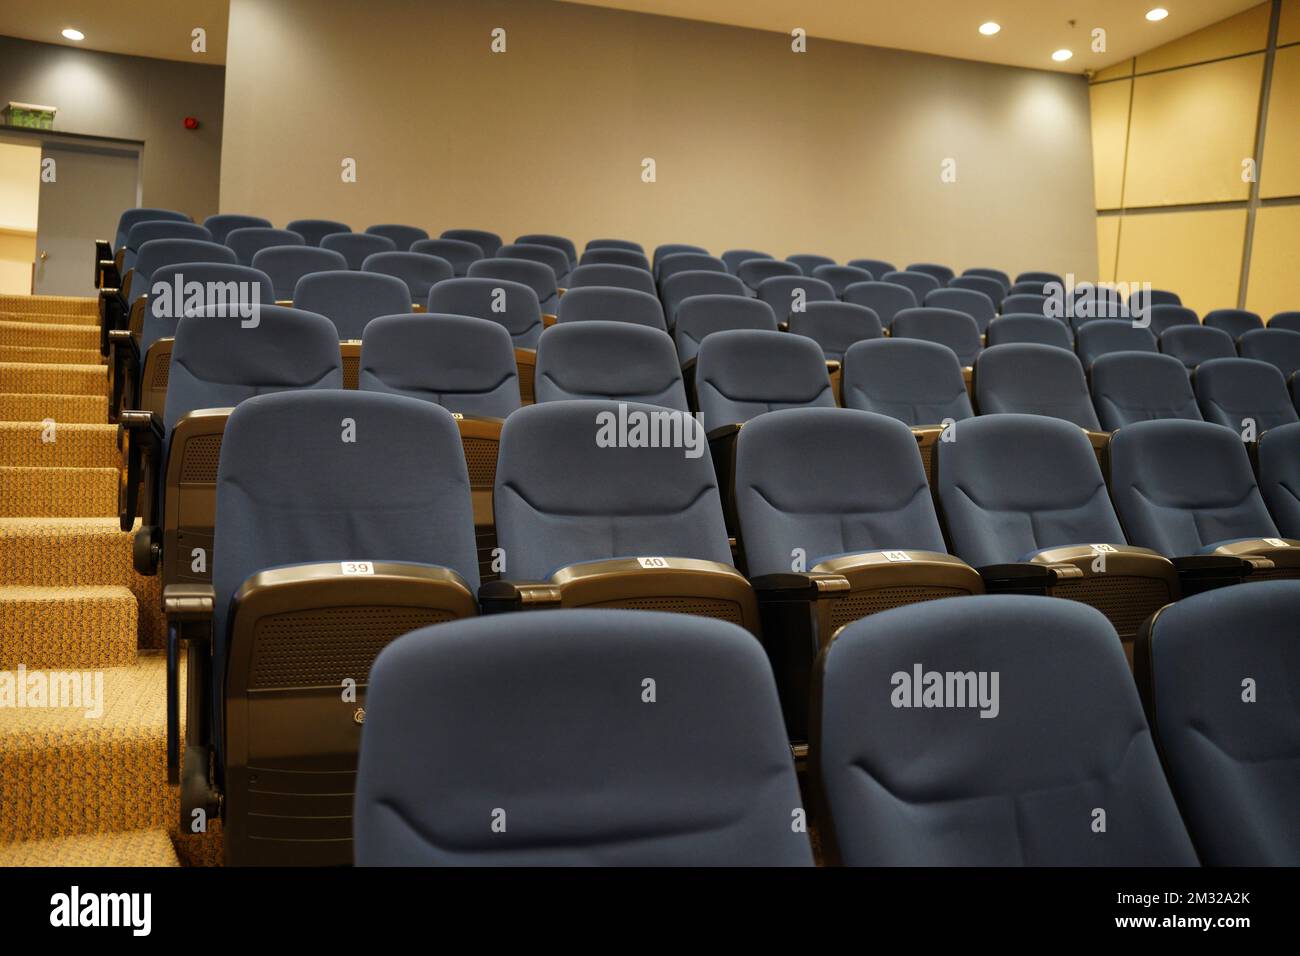 Sedie cinema teatro immagini e fotografie stock ad alta risoluzione - Alamy